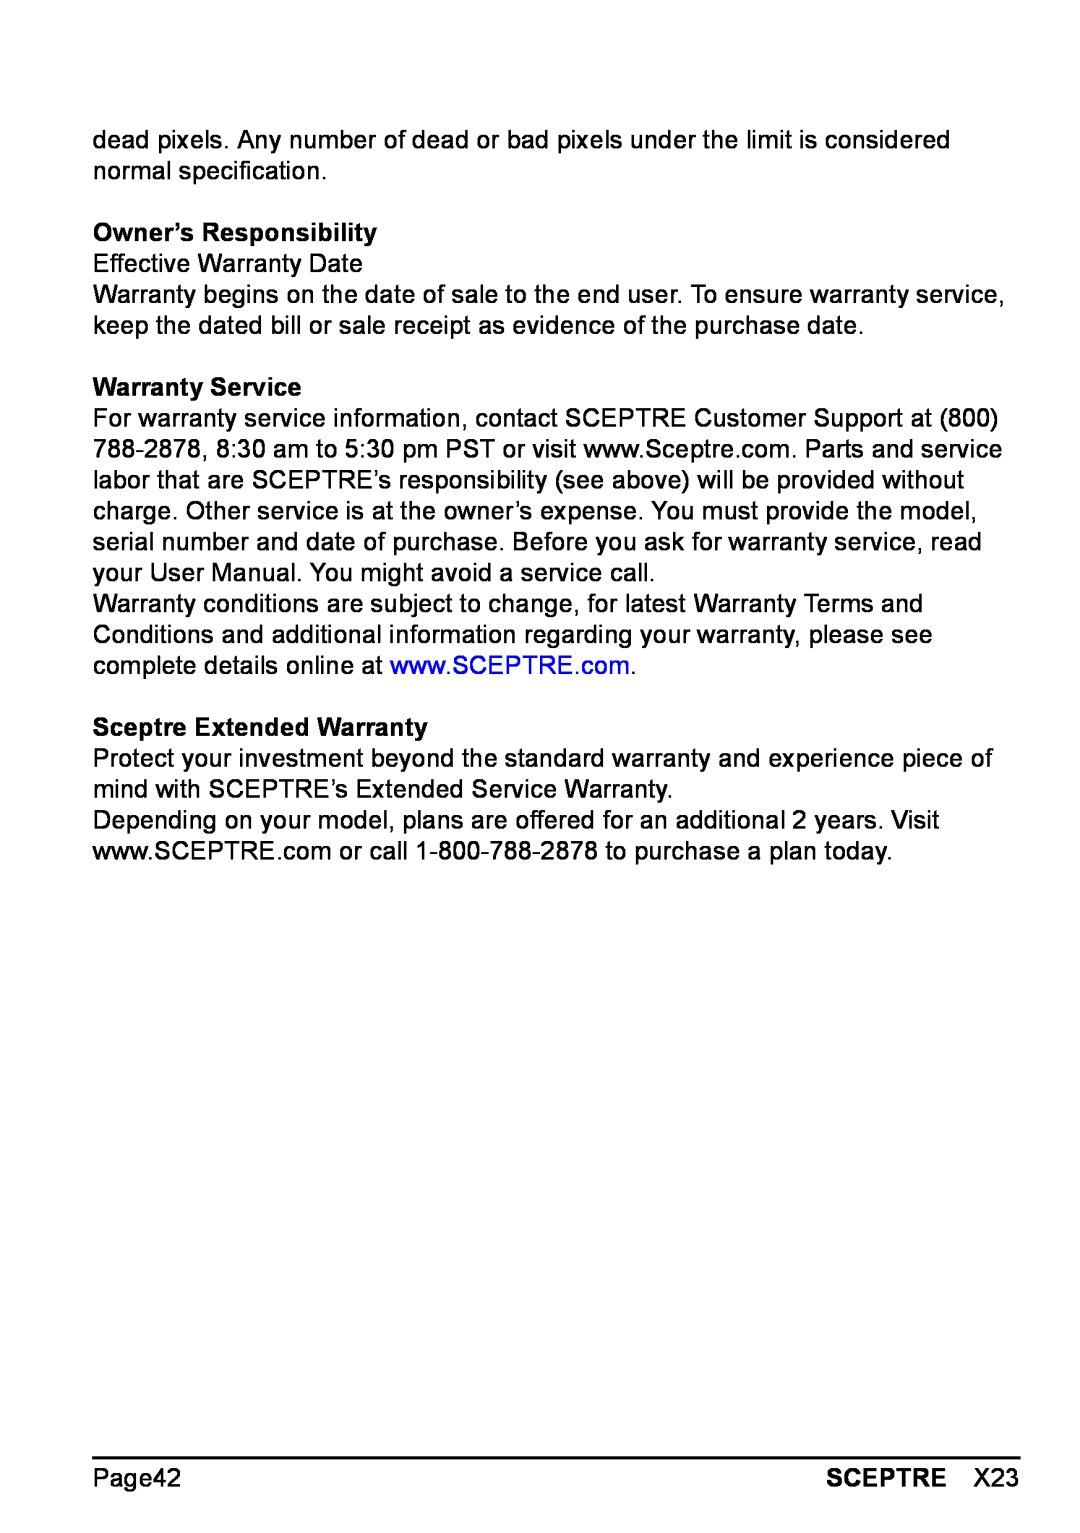 Sceptre Technologies X23 Owner’s Responsibility Effective Warranty Date, Warranty Service, Sceptre Extended Warranty 